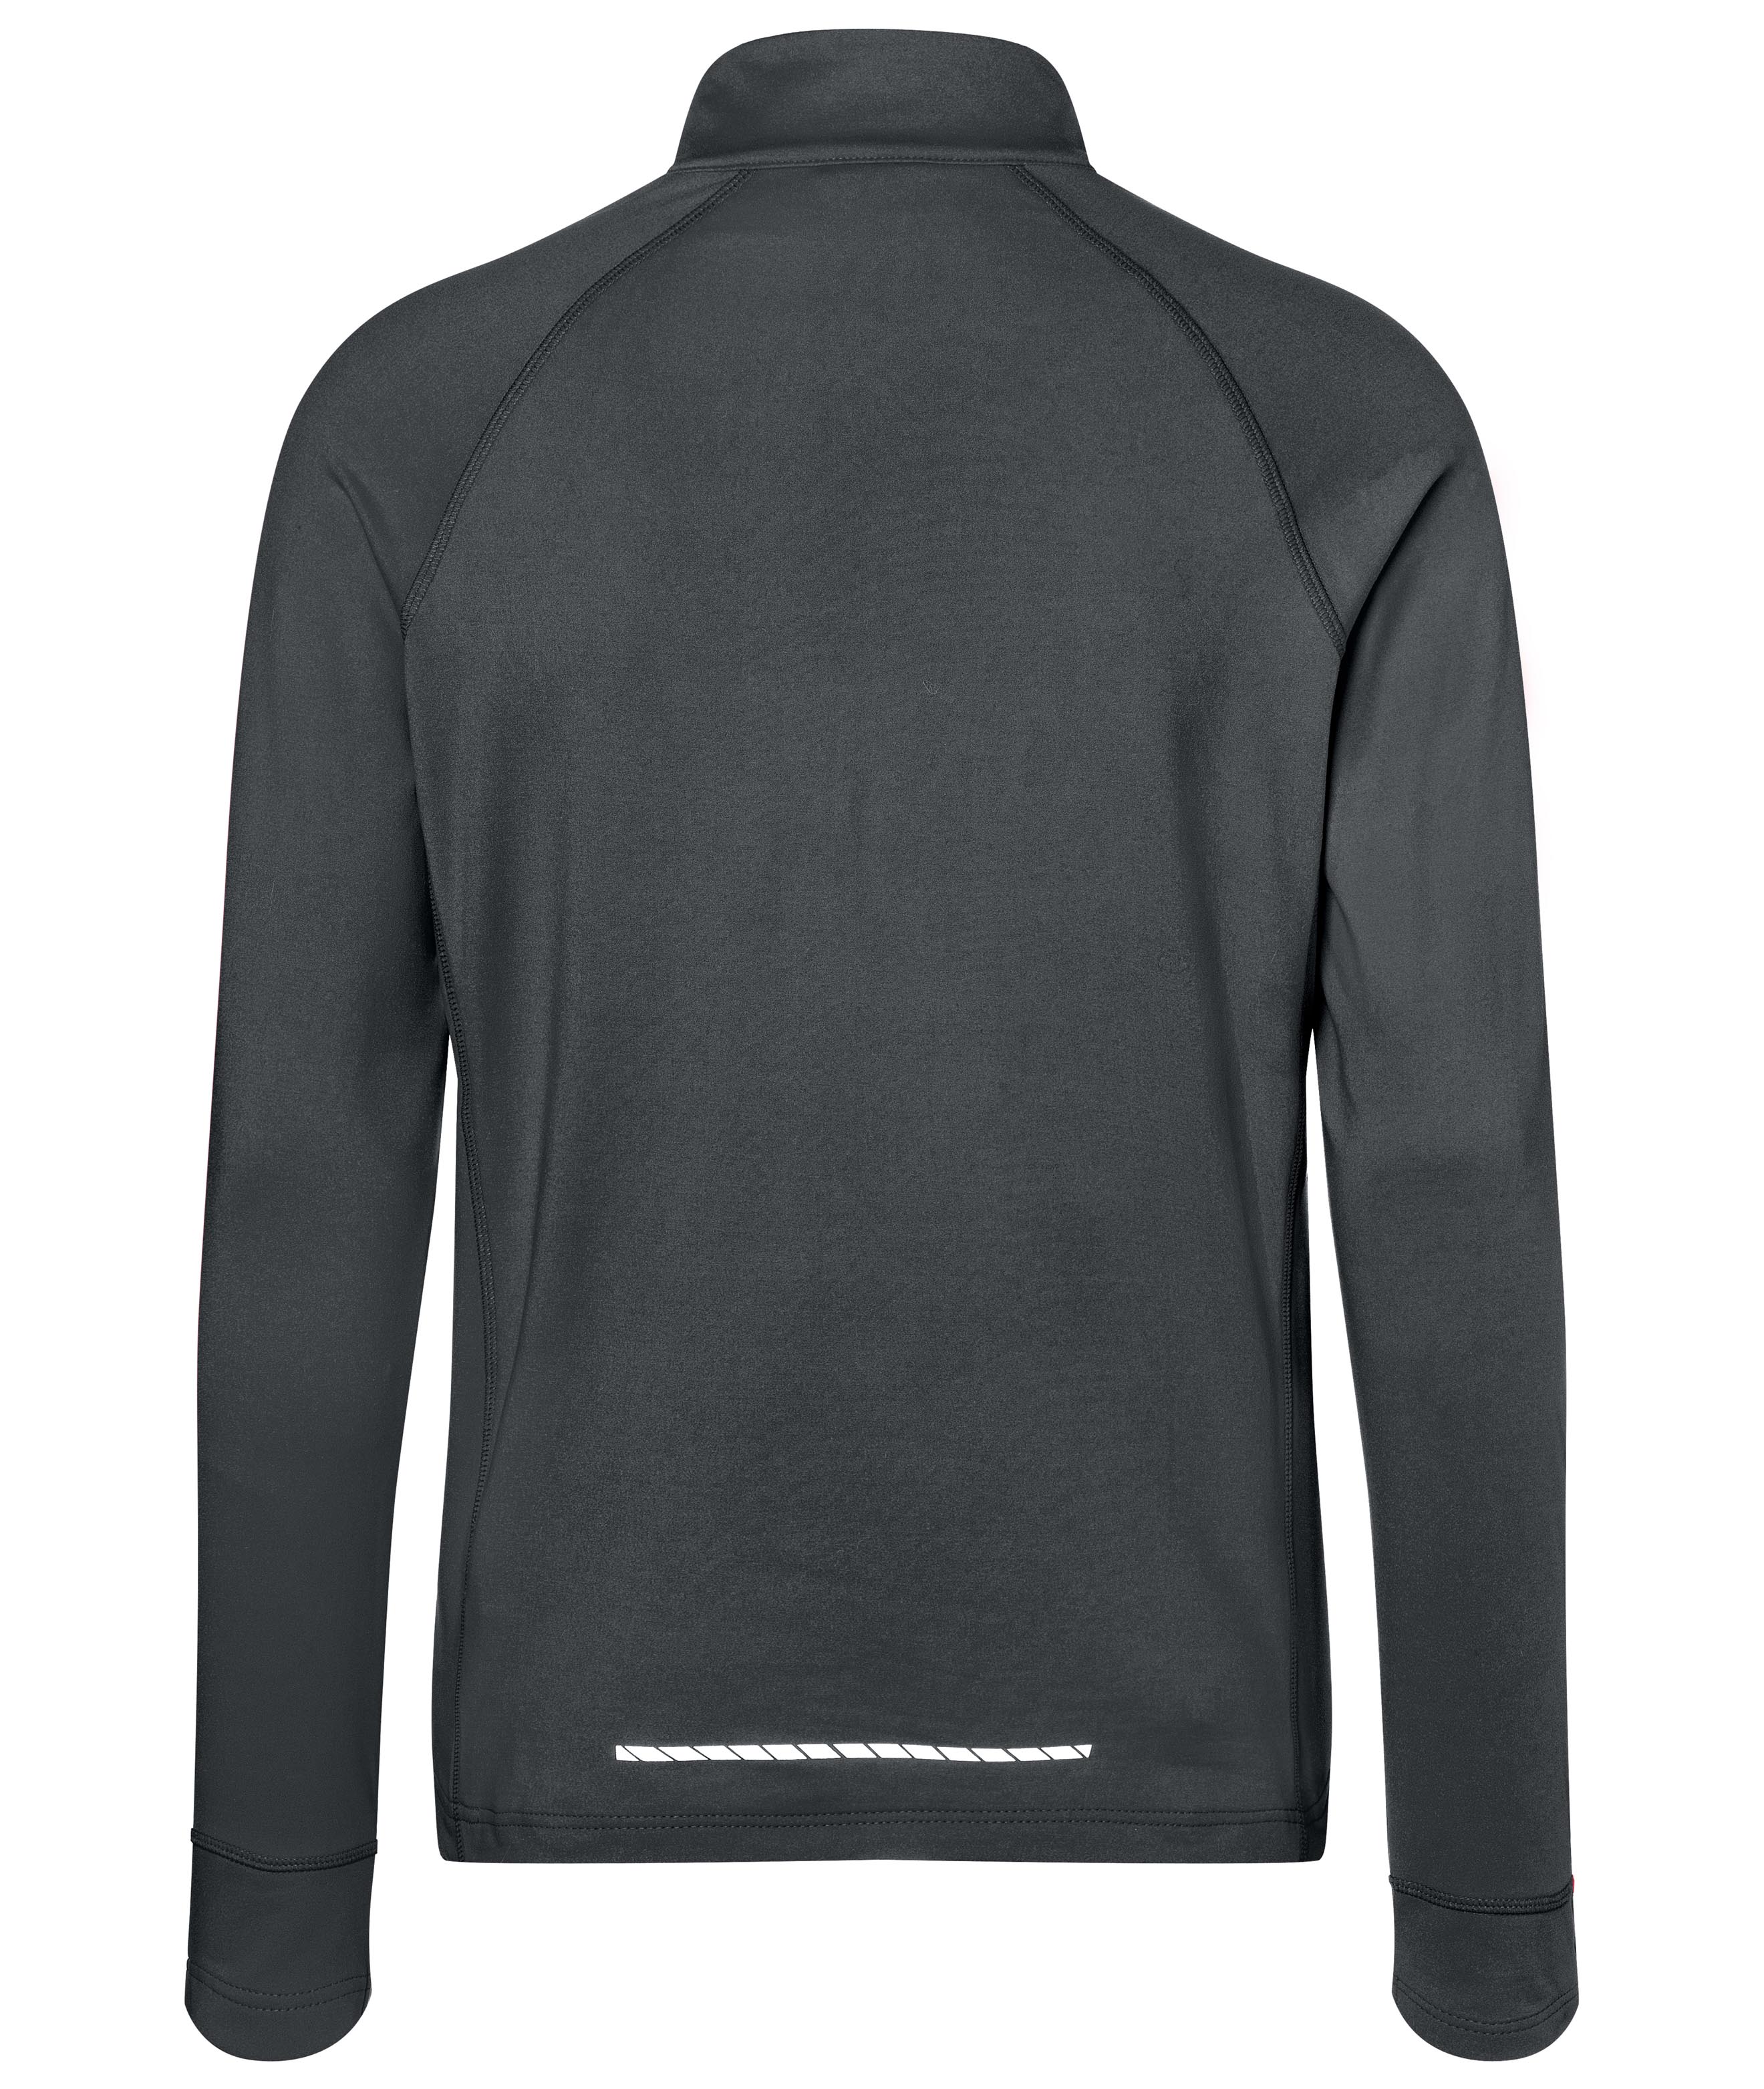 Men's Sports Shirt Half-Zip JN788 Langarm-Shirt mit Reißverschluss für Sport und Freizeit